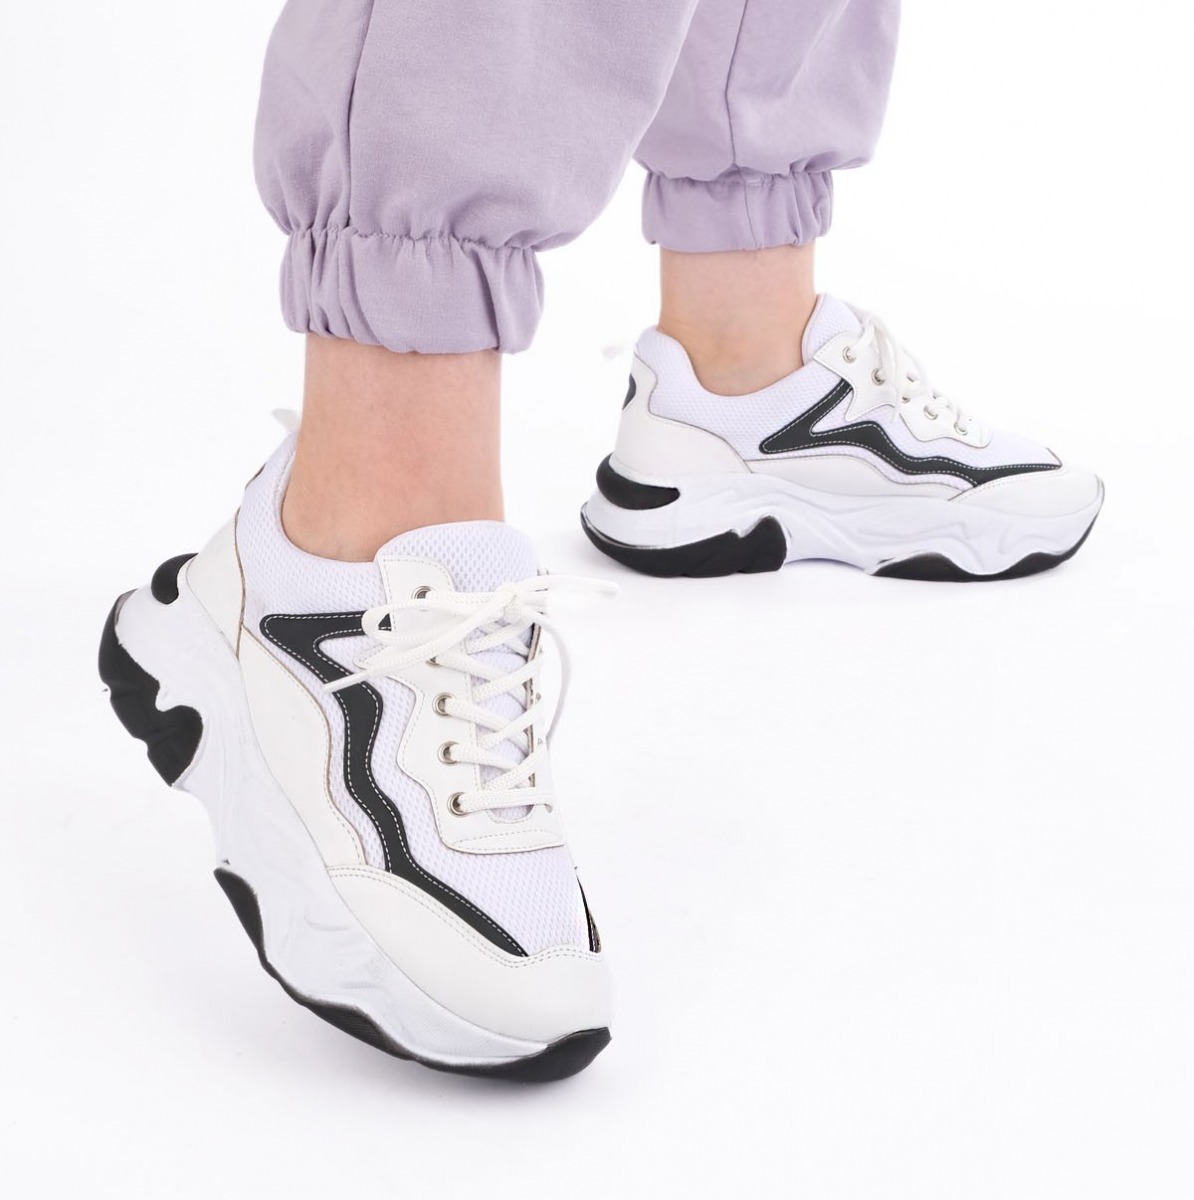 Flo Kadın Sneaker Dolgu Topuk Spor Ayakkabı Cevas Beyaz. 3